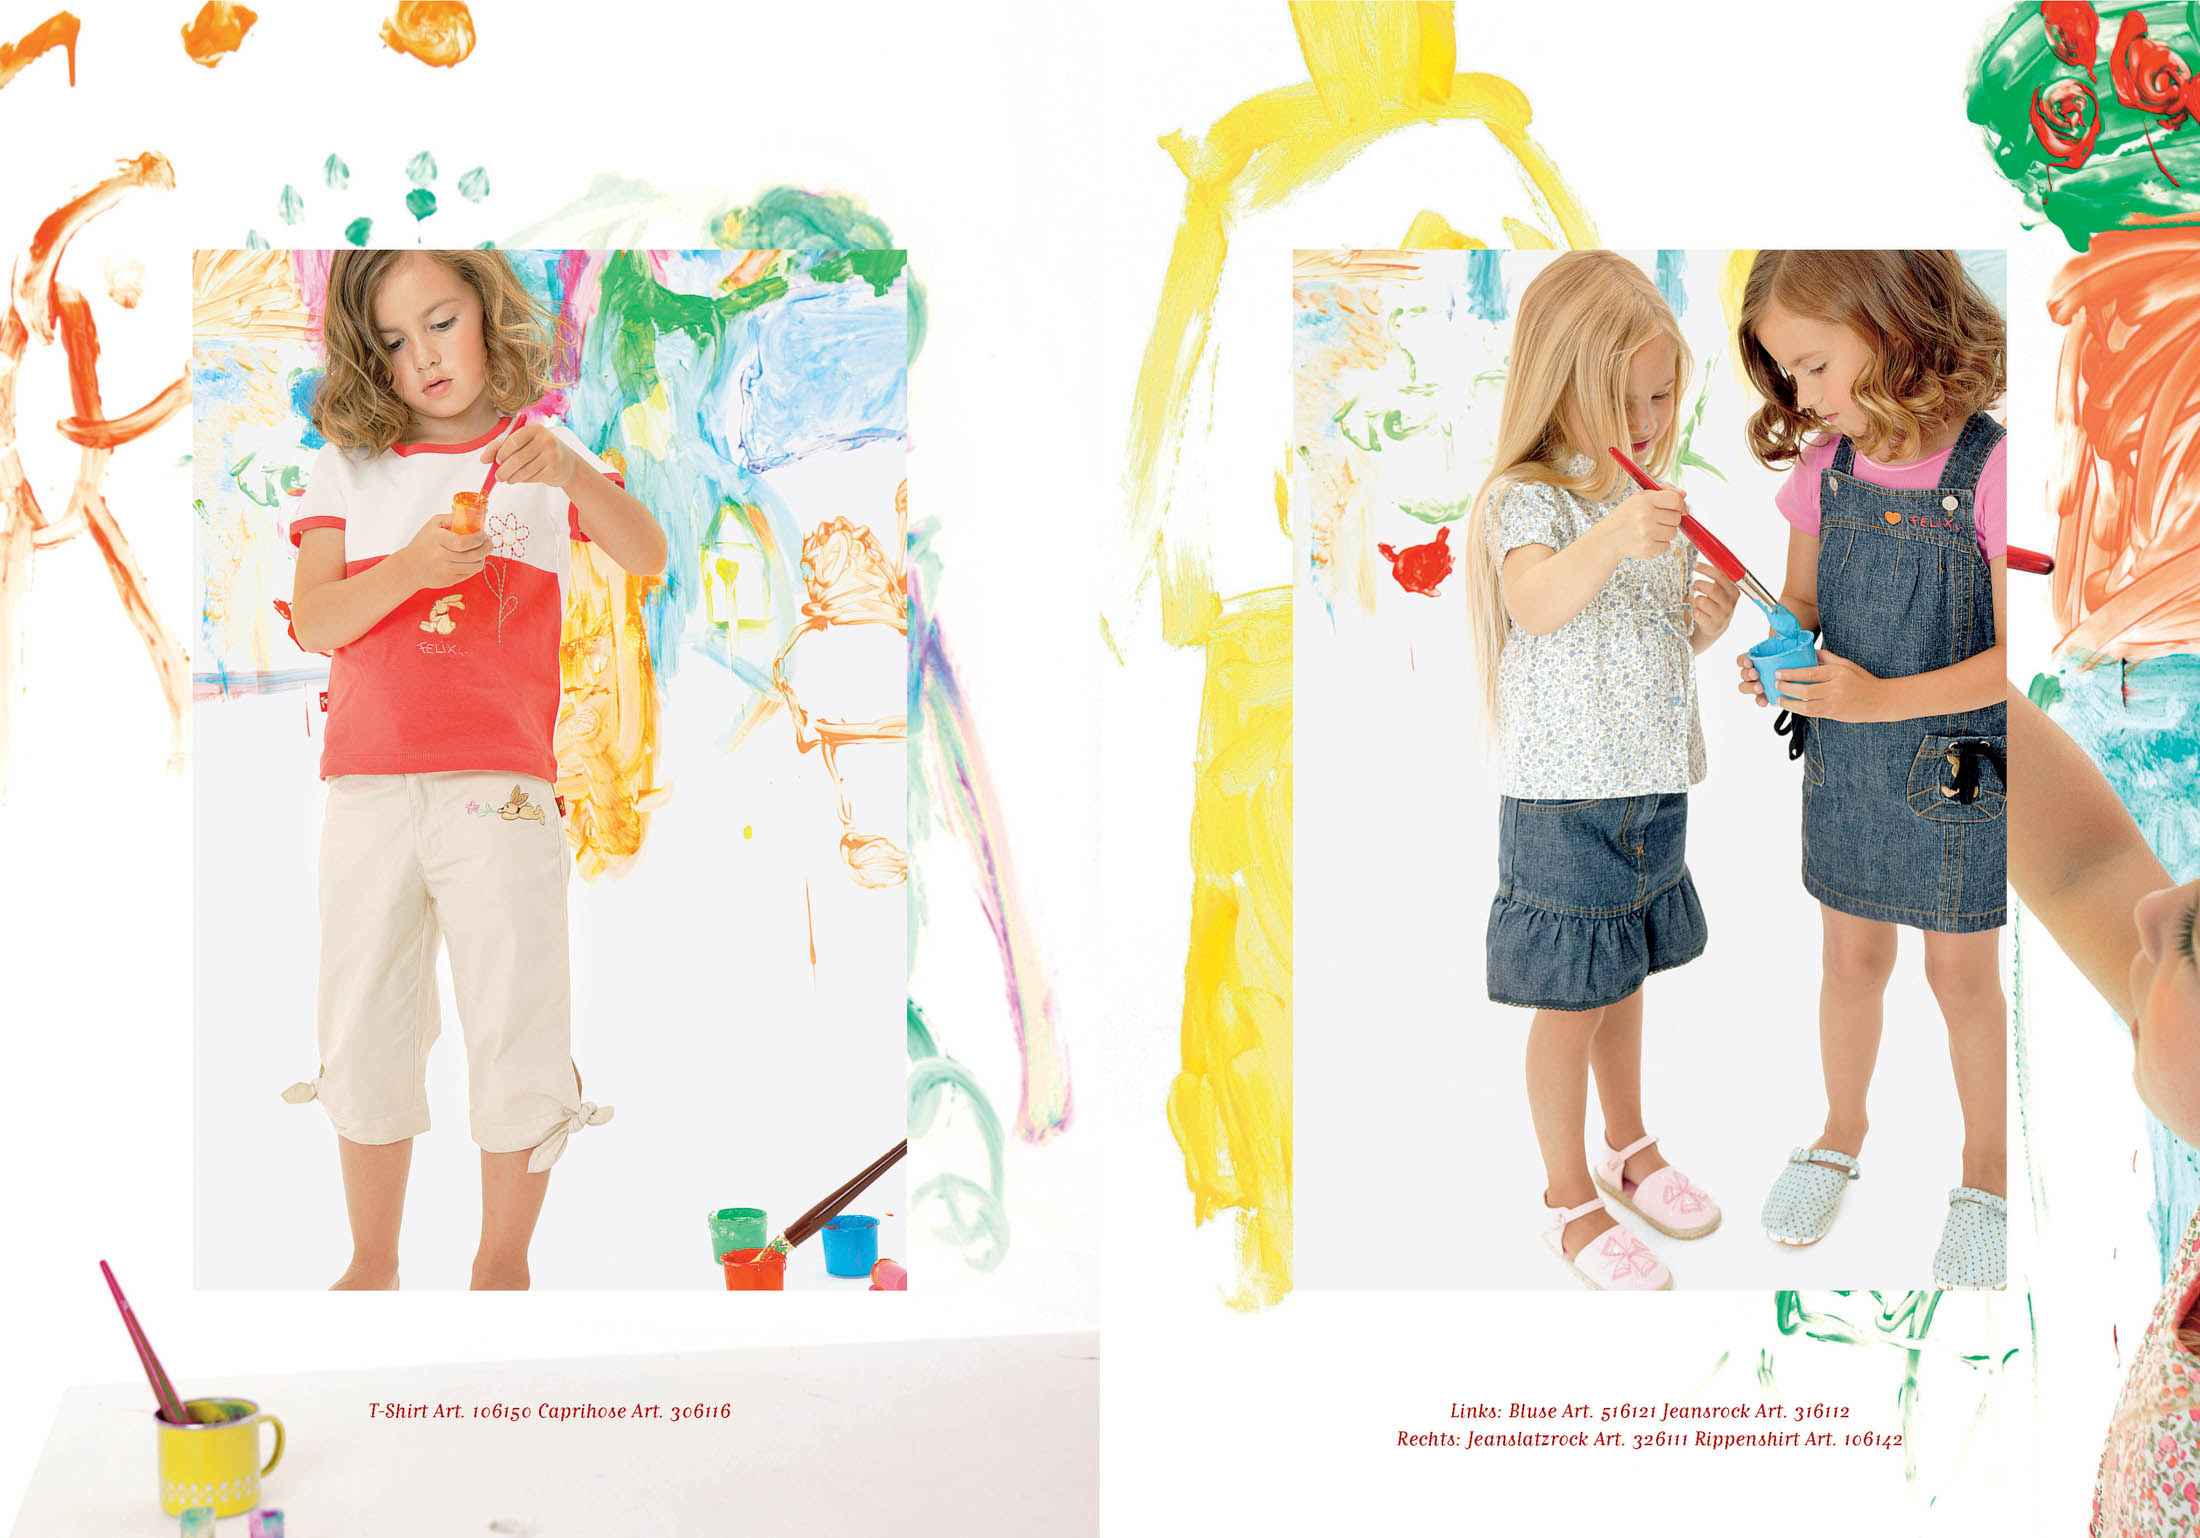 Zwei Bilder von kleinen Kindern, die sich künstlerisch betätigen. Links ist ein Mädchen in einem roten Shirt zu sehen, das sich darauf konzentriert, Farbe herauszudrücken. Rechts sind zwei Mädchen zu sehen, die inmitten eines farbenfrohen Kunstwerks ein Smartphone inspizieren. Beide Szenen sind von bunten Pinselstrichen eingerahmt. © Fotografie Tomas Rodriguez